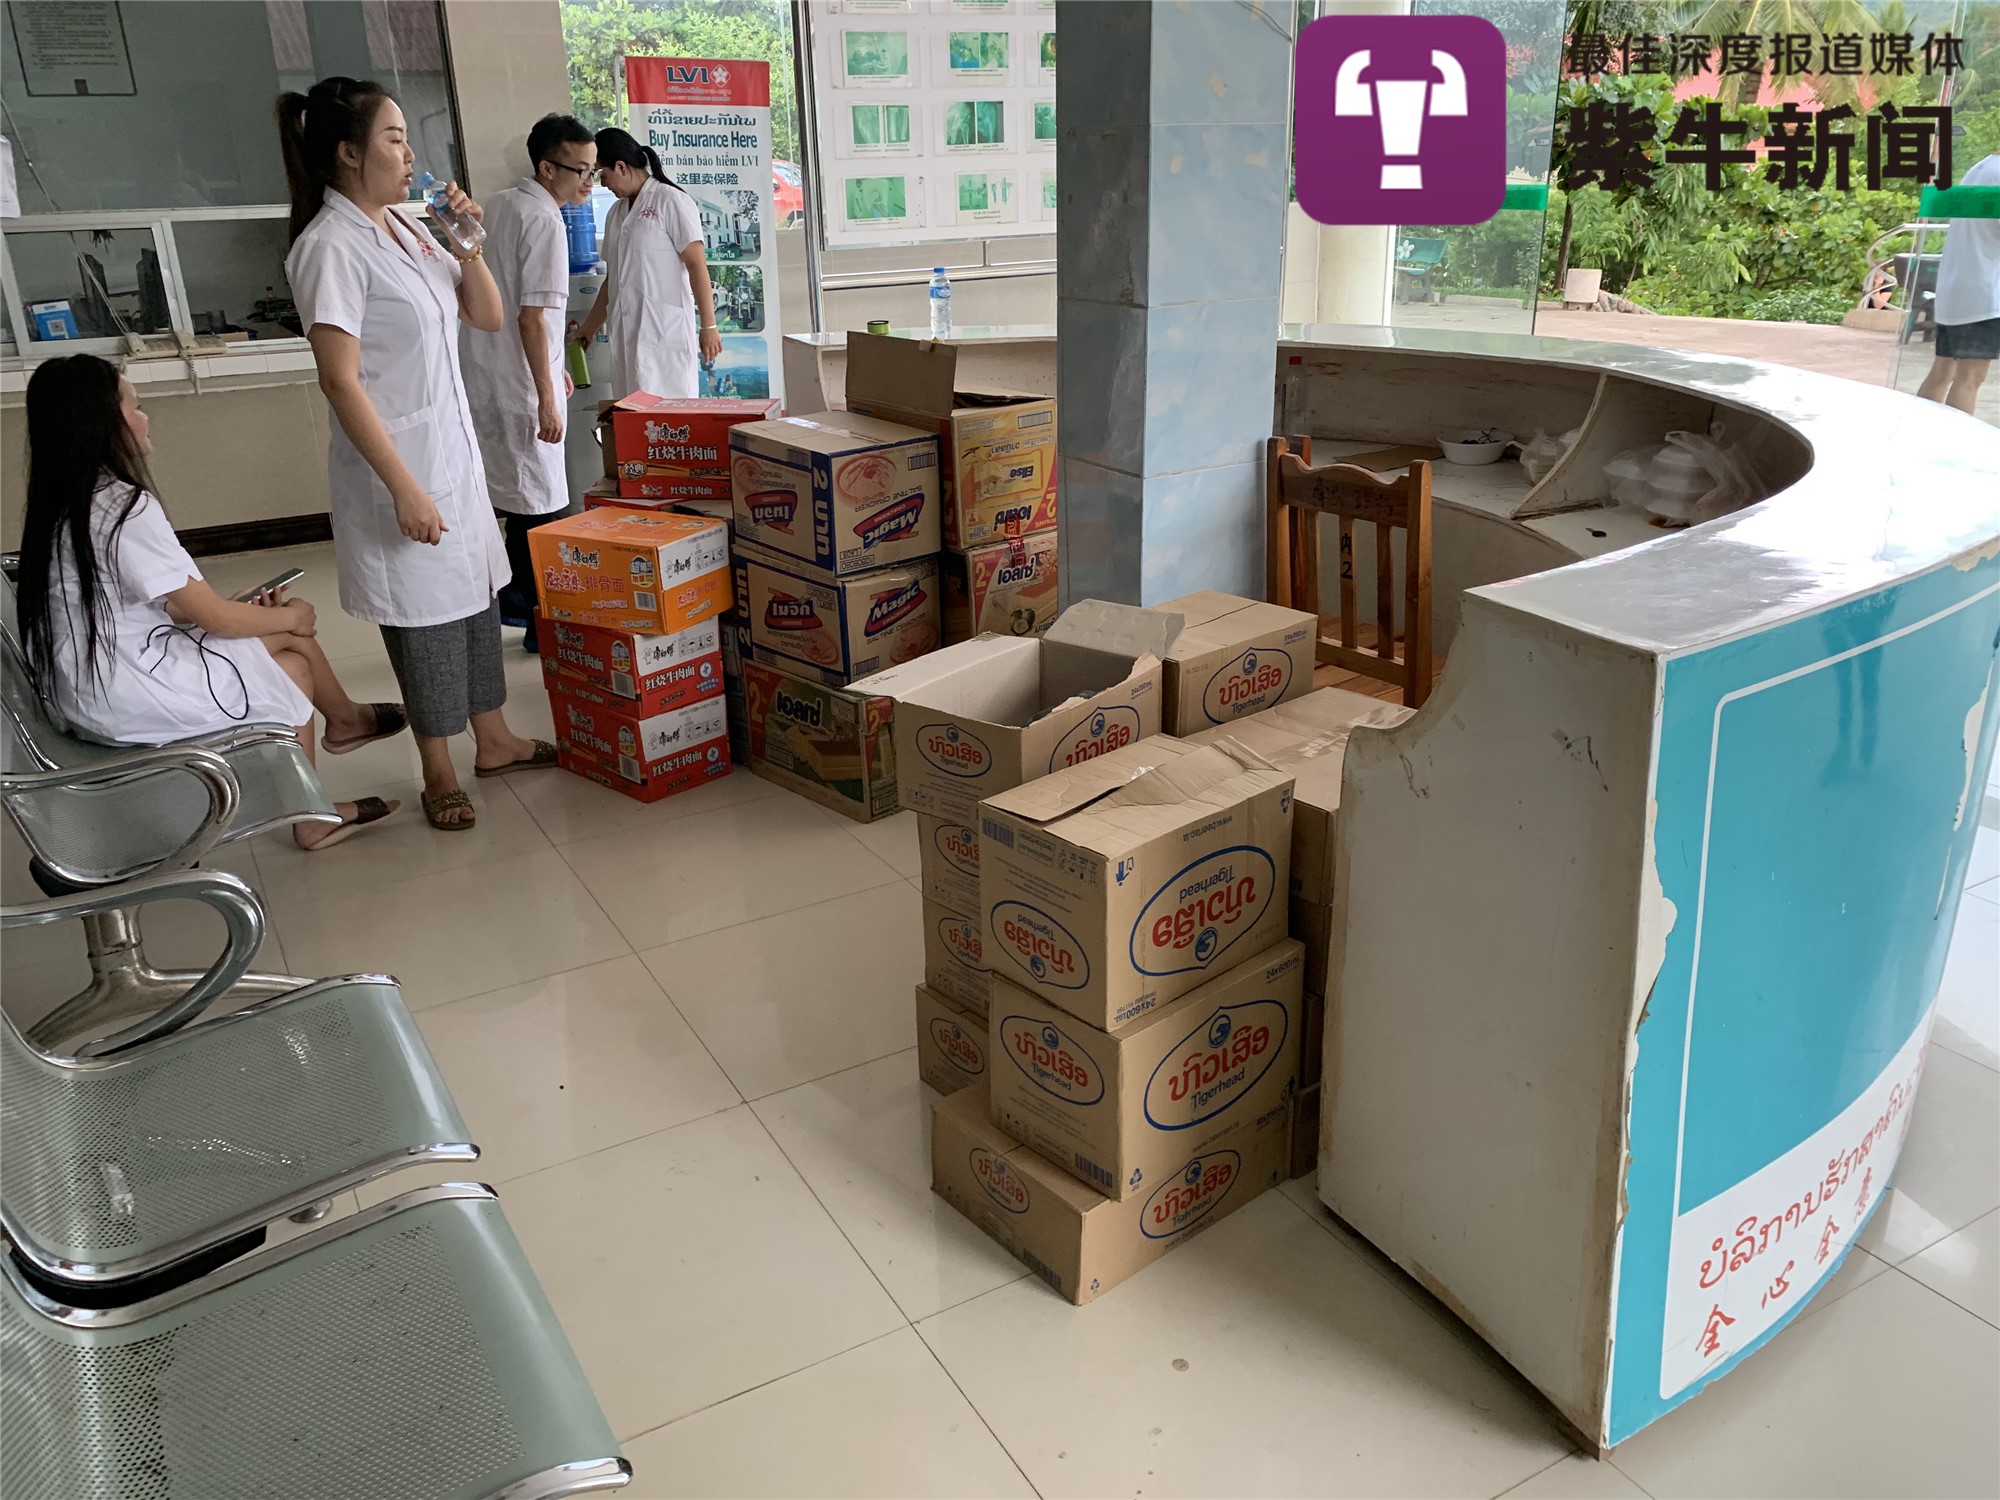 老挝中老国际医院堆满了华人捐赠的物资